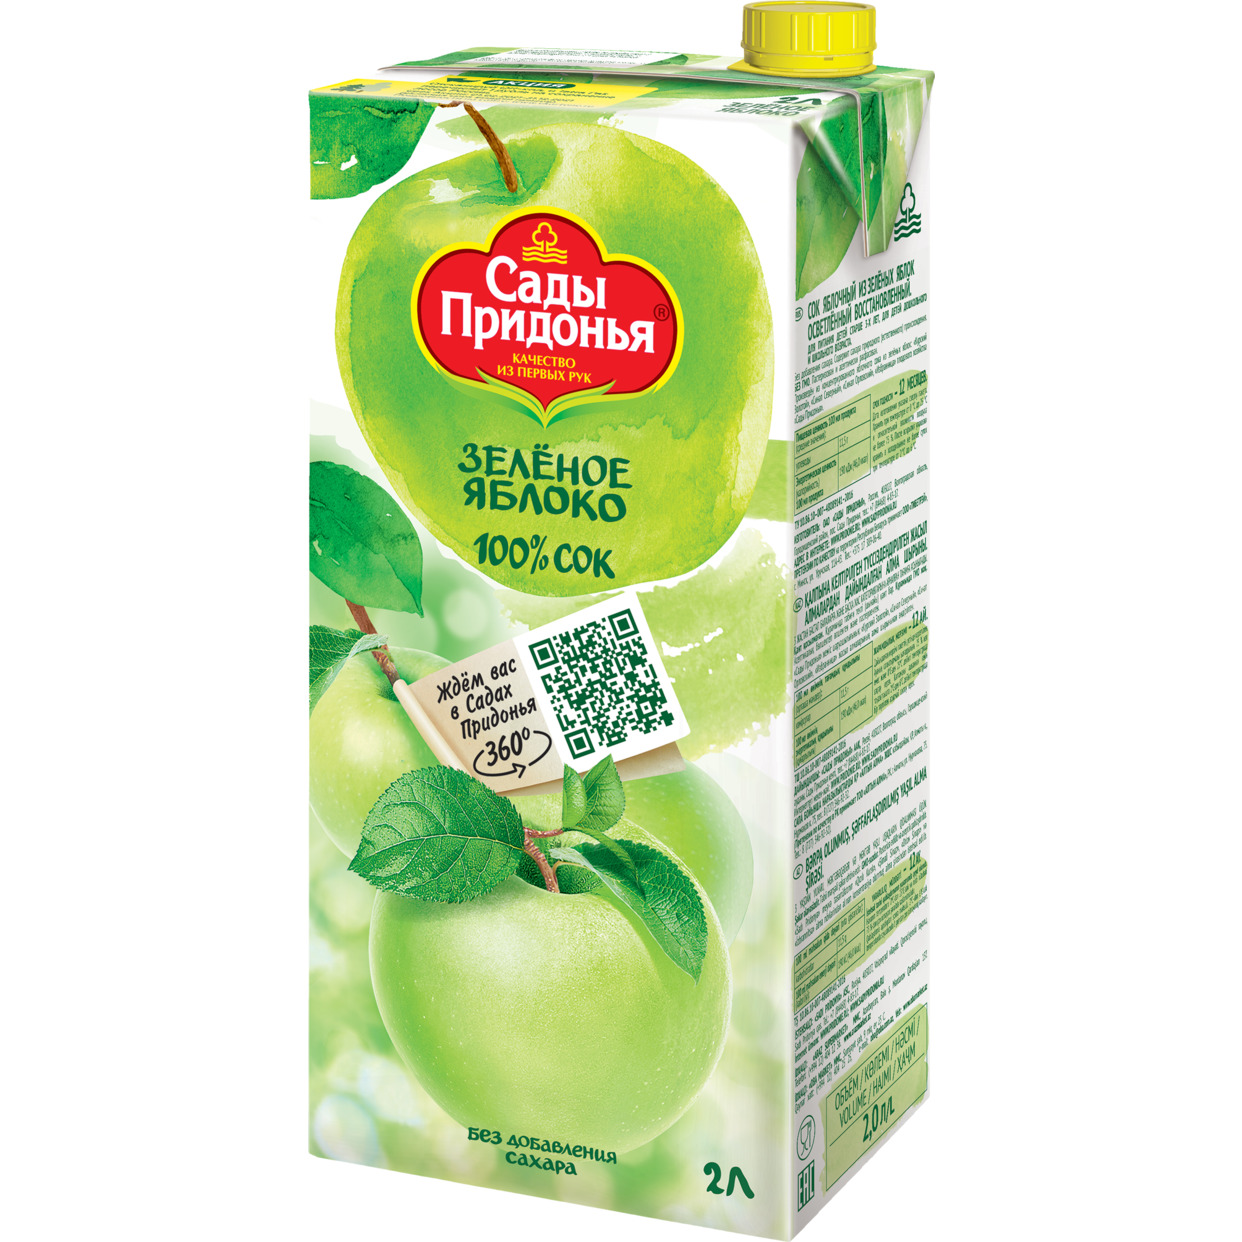 Сок яблочный из зеленых яблок осветленный восстановленный дет. 2л